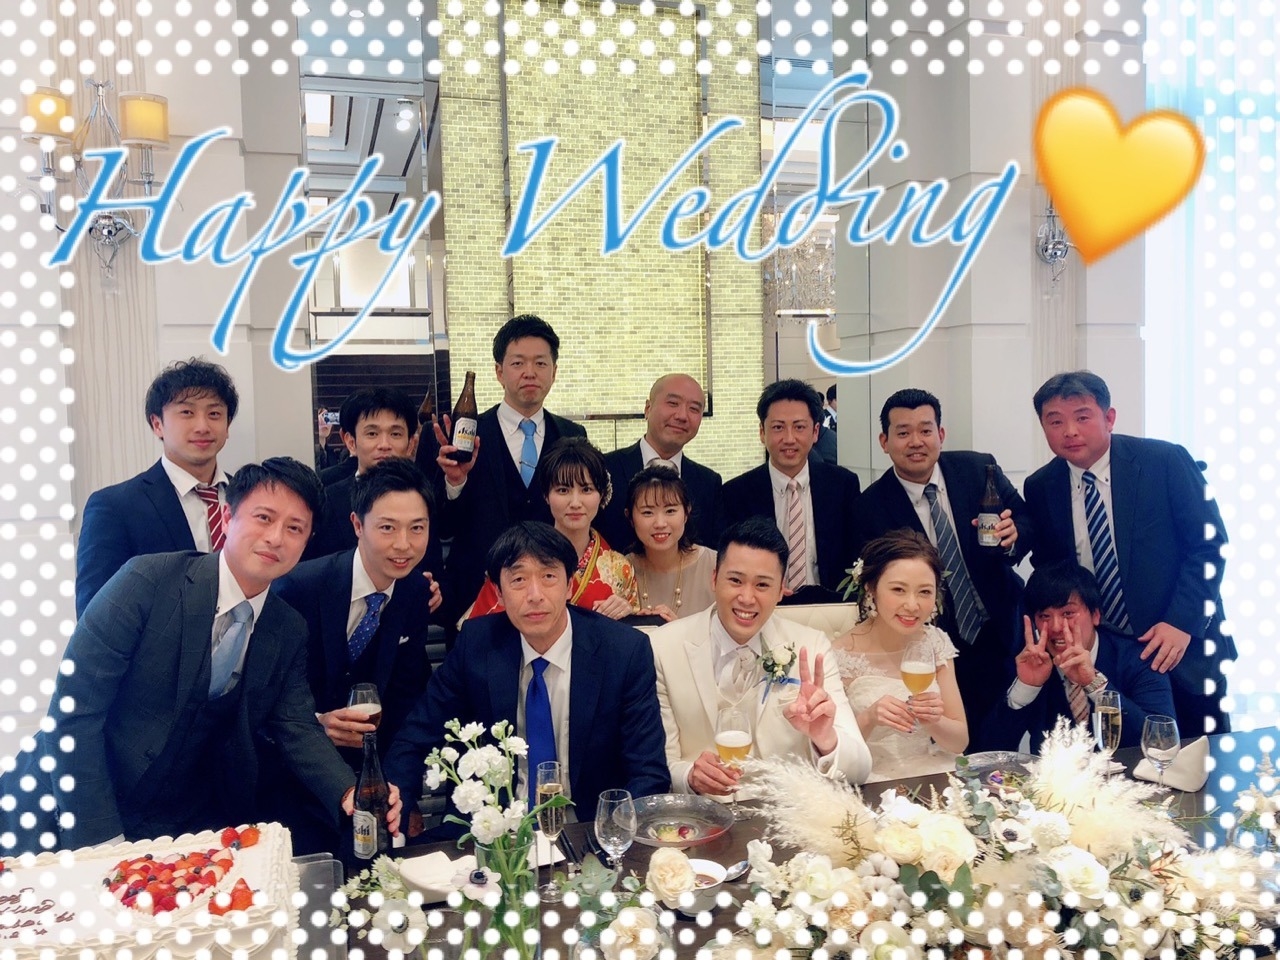 清水店 Happy Wedding 倉橋